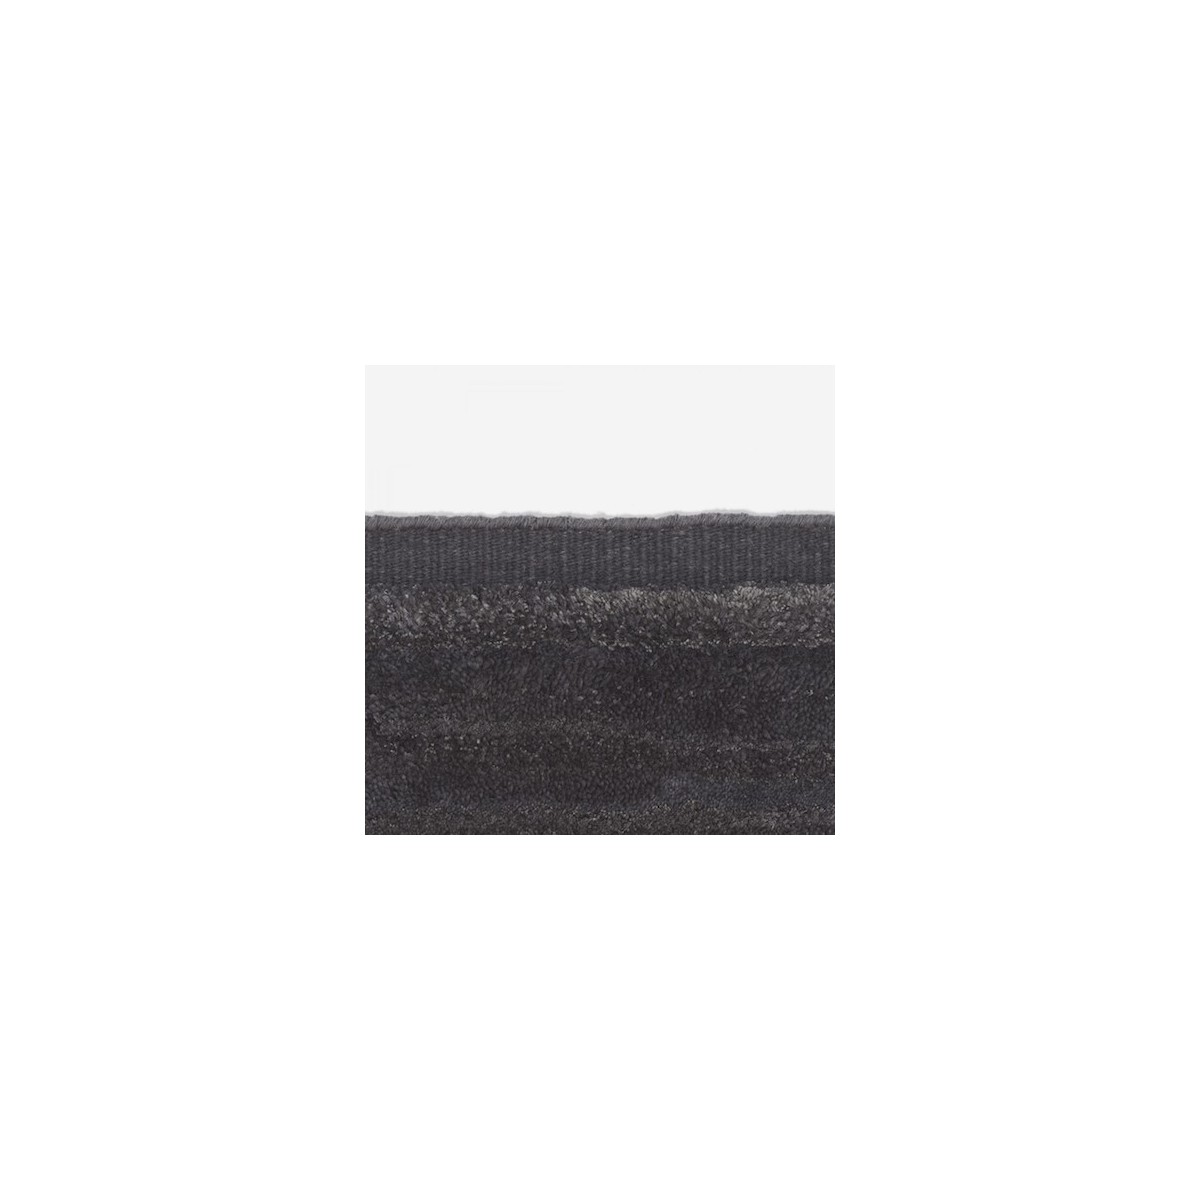 200x300cm - 0023 - Cascade rug